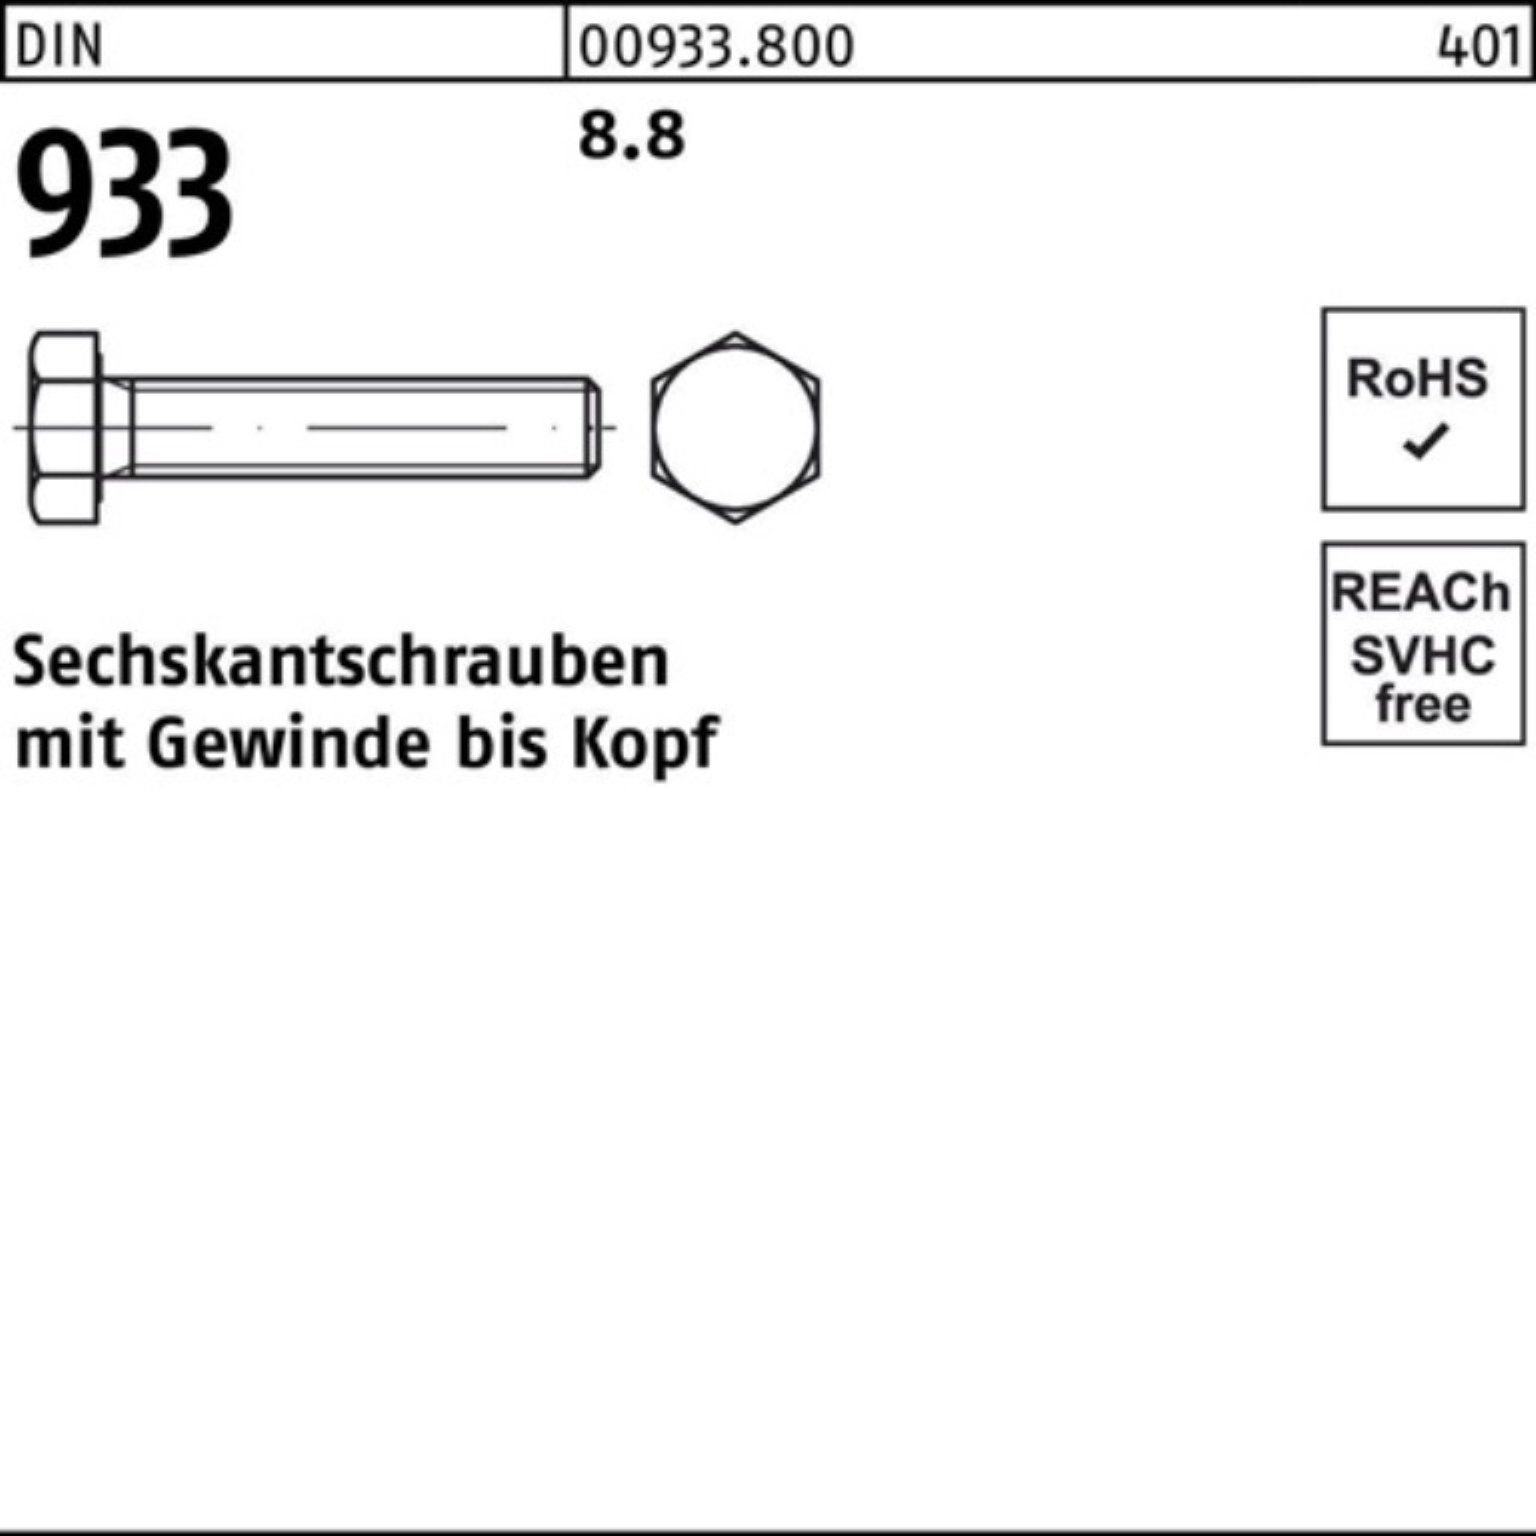 Reyher Sechskantschraube 100er Pack Sechskantschraube DIN DIN 45 933 Stück 933 8.8 M18x VG 50